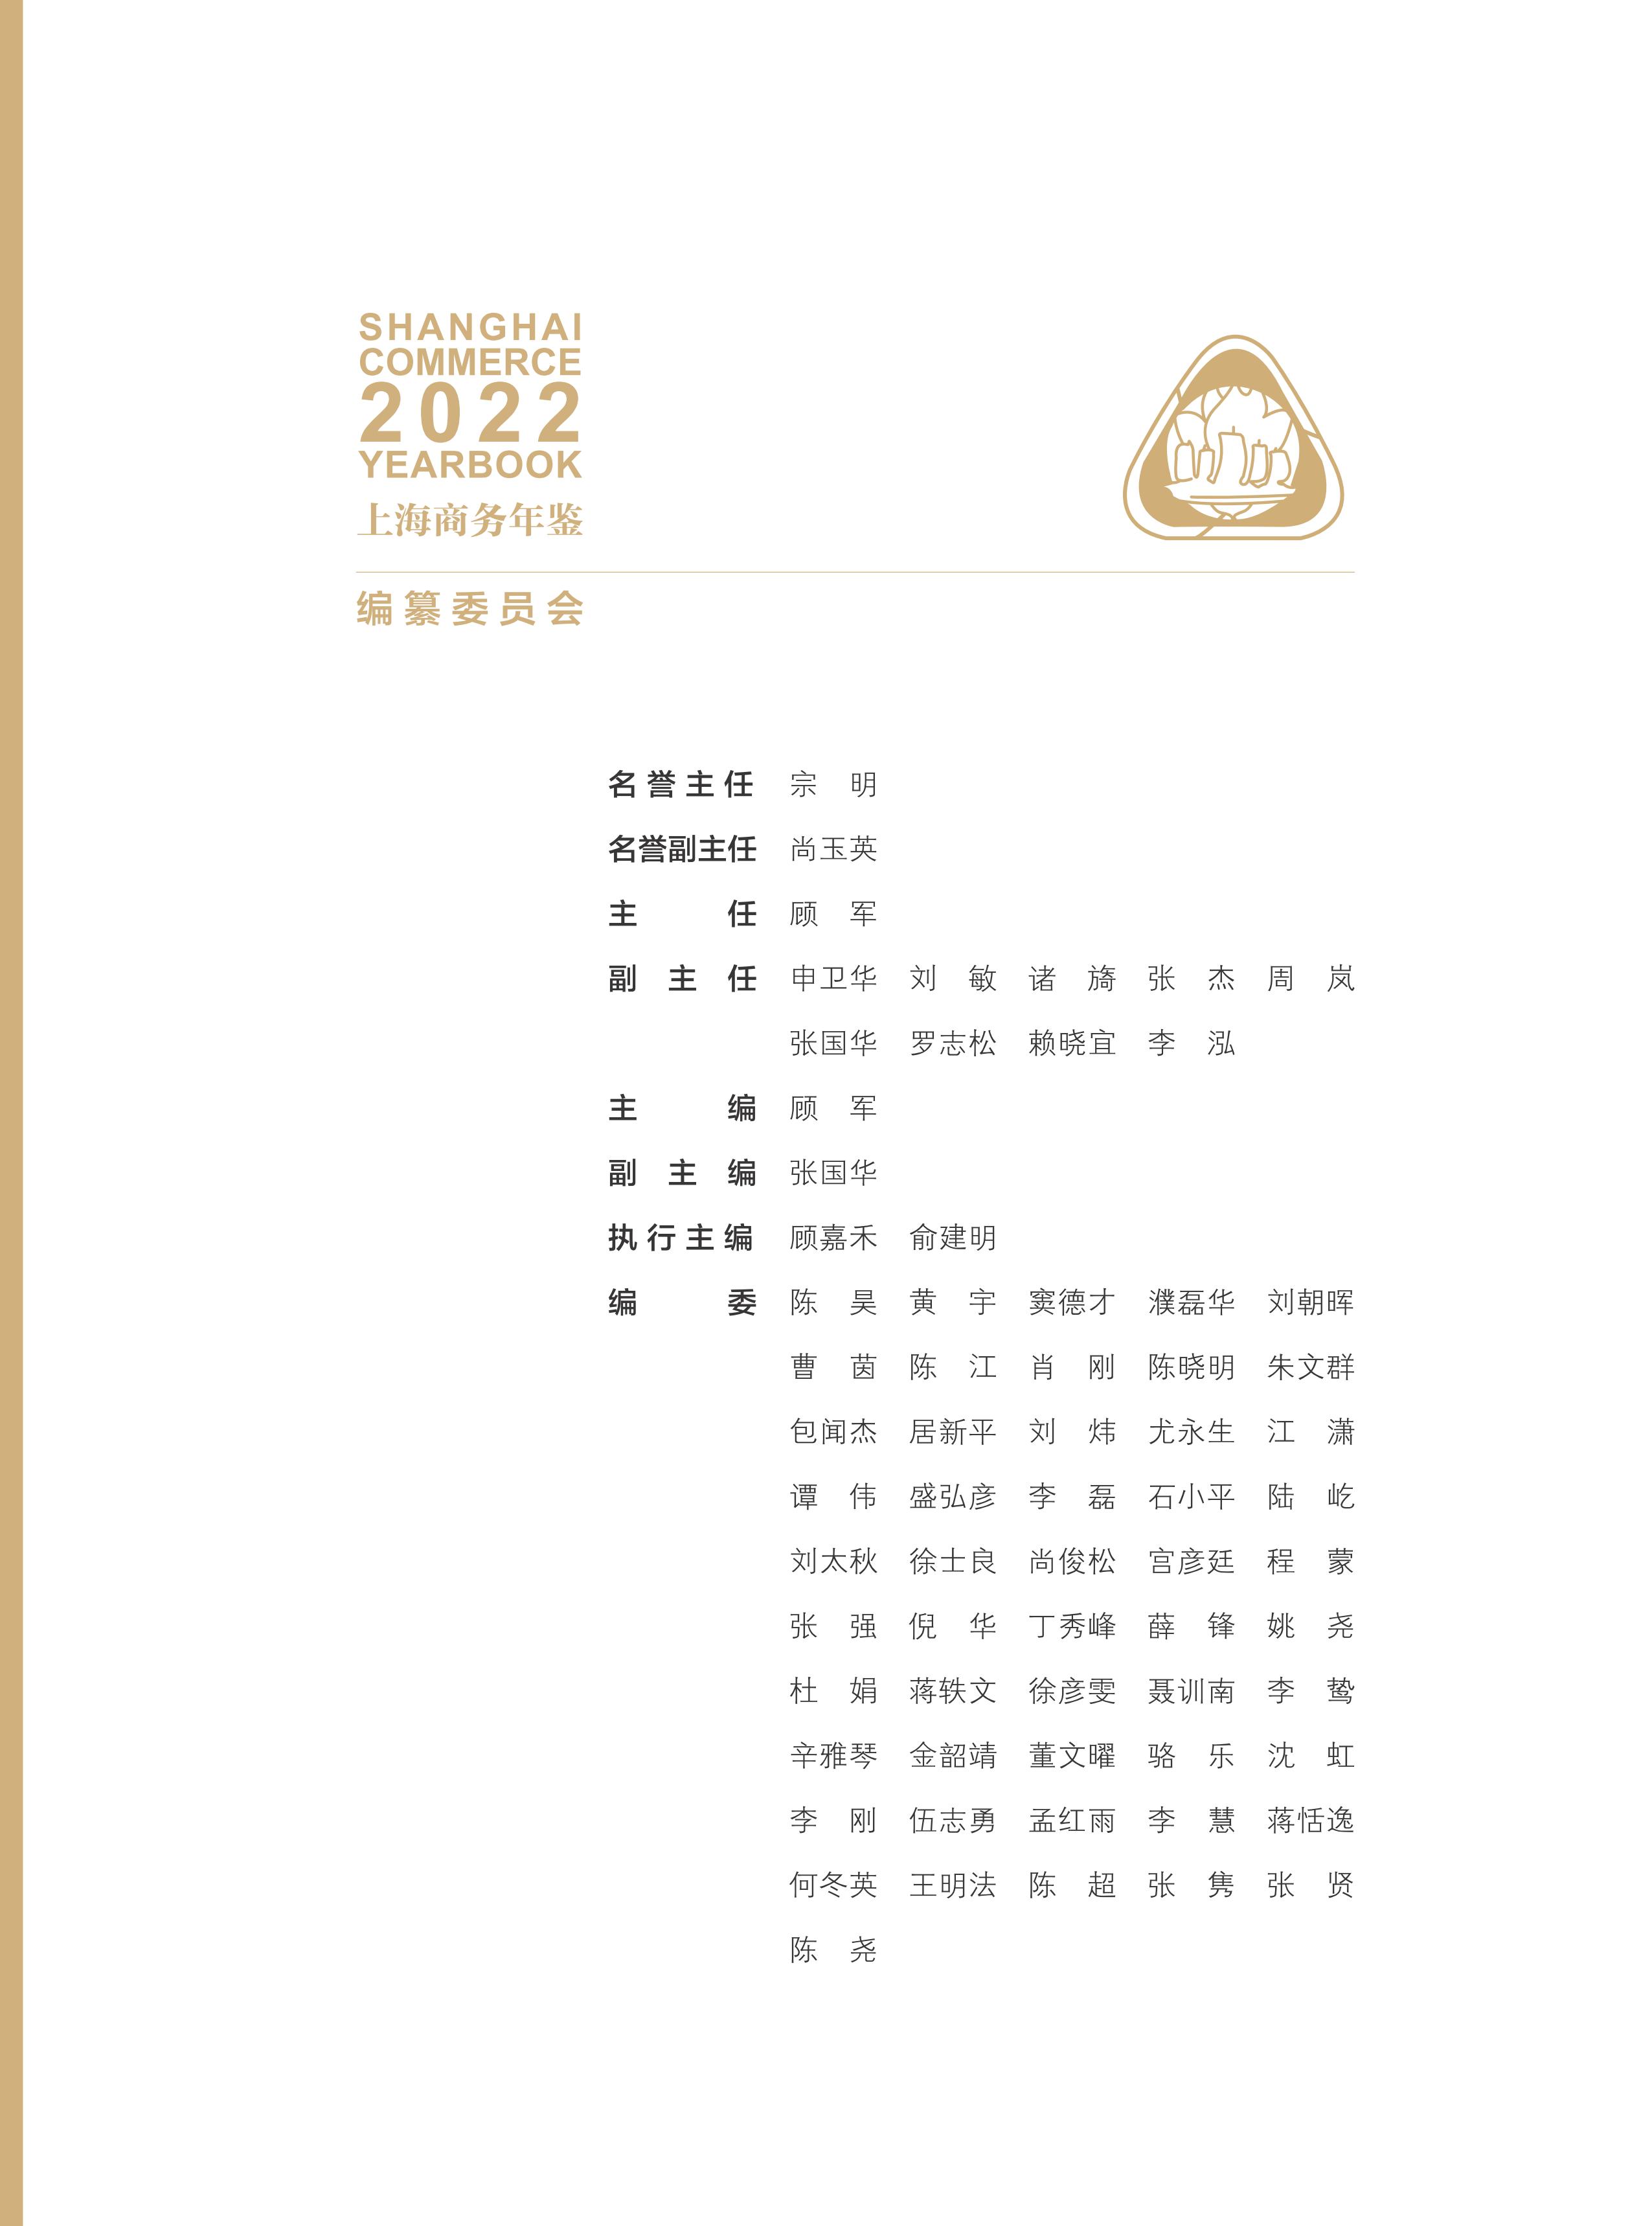 全-上海商务年鉴2022_03.jpg